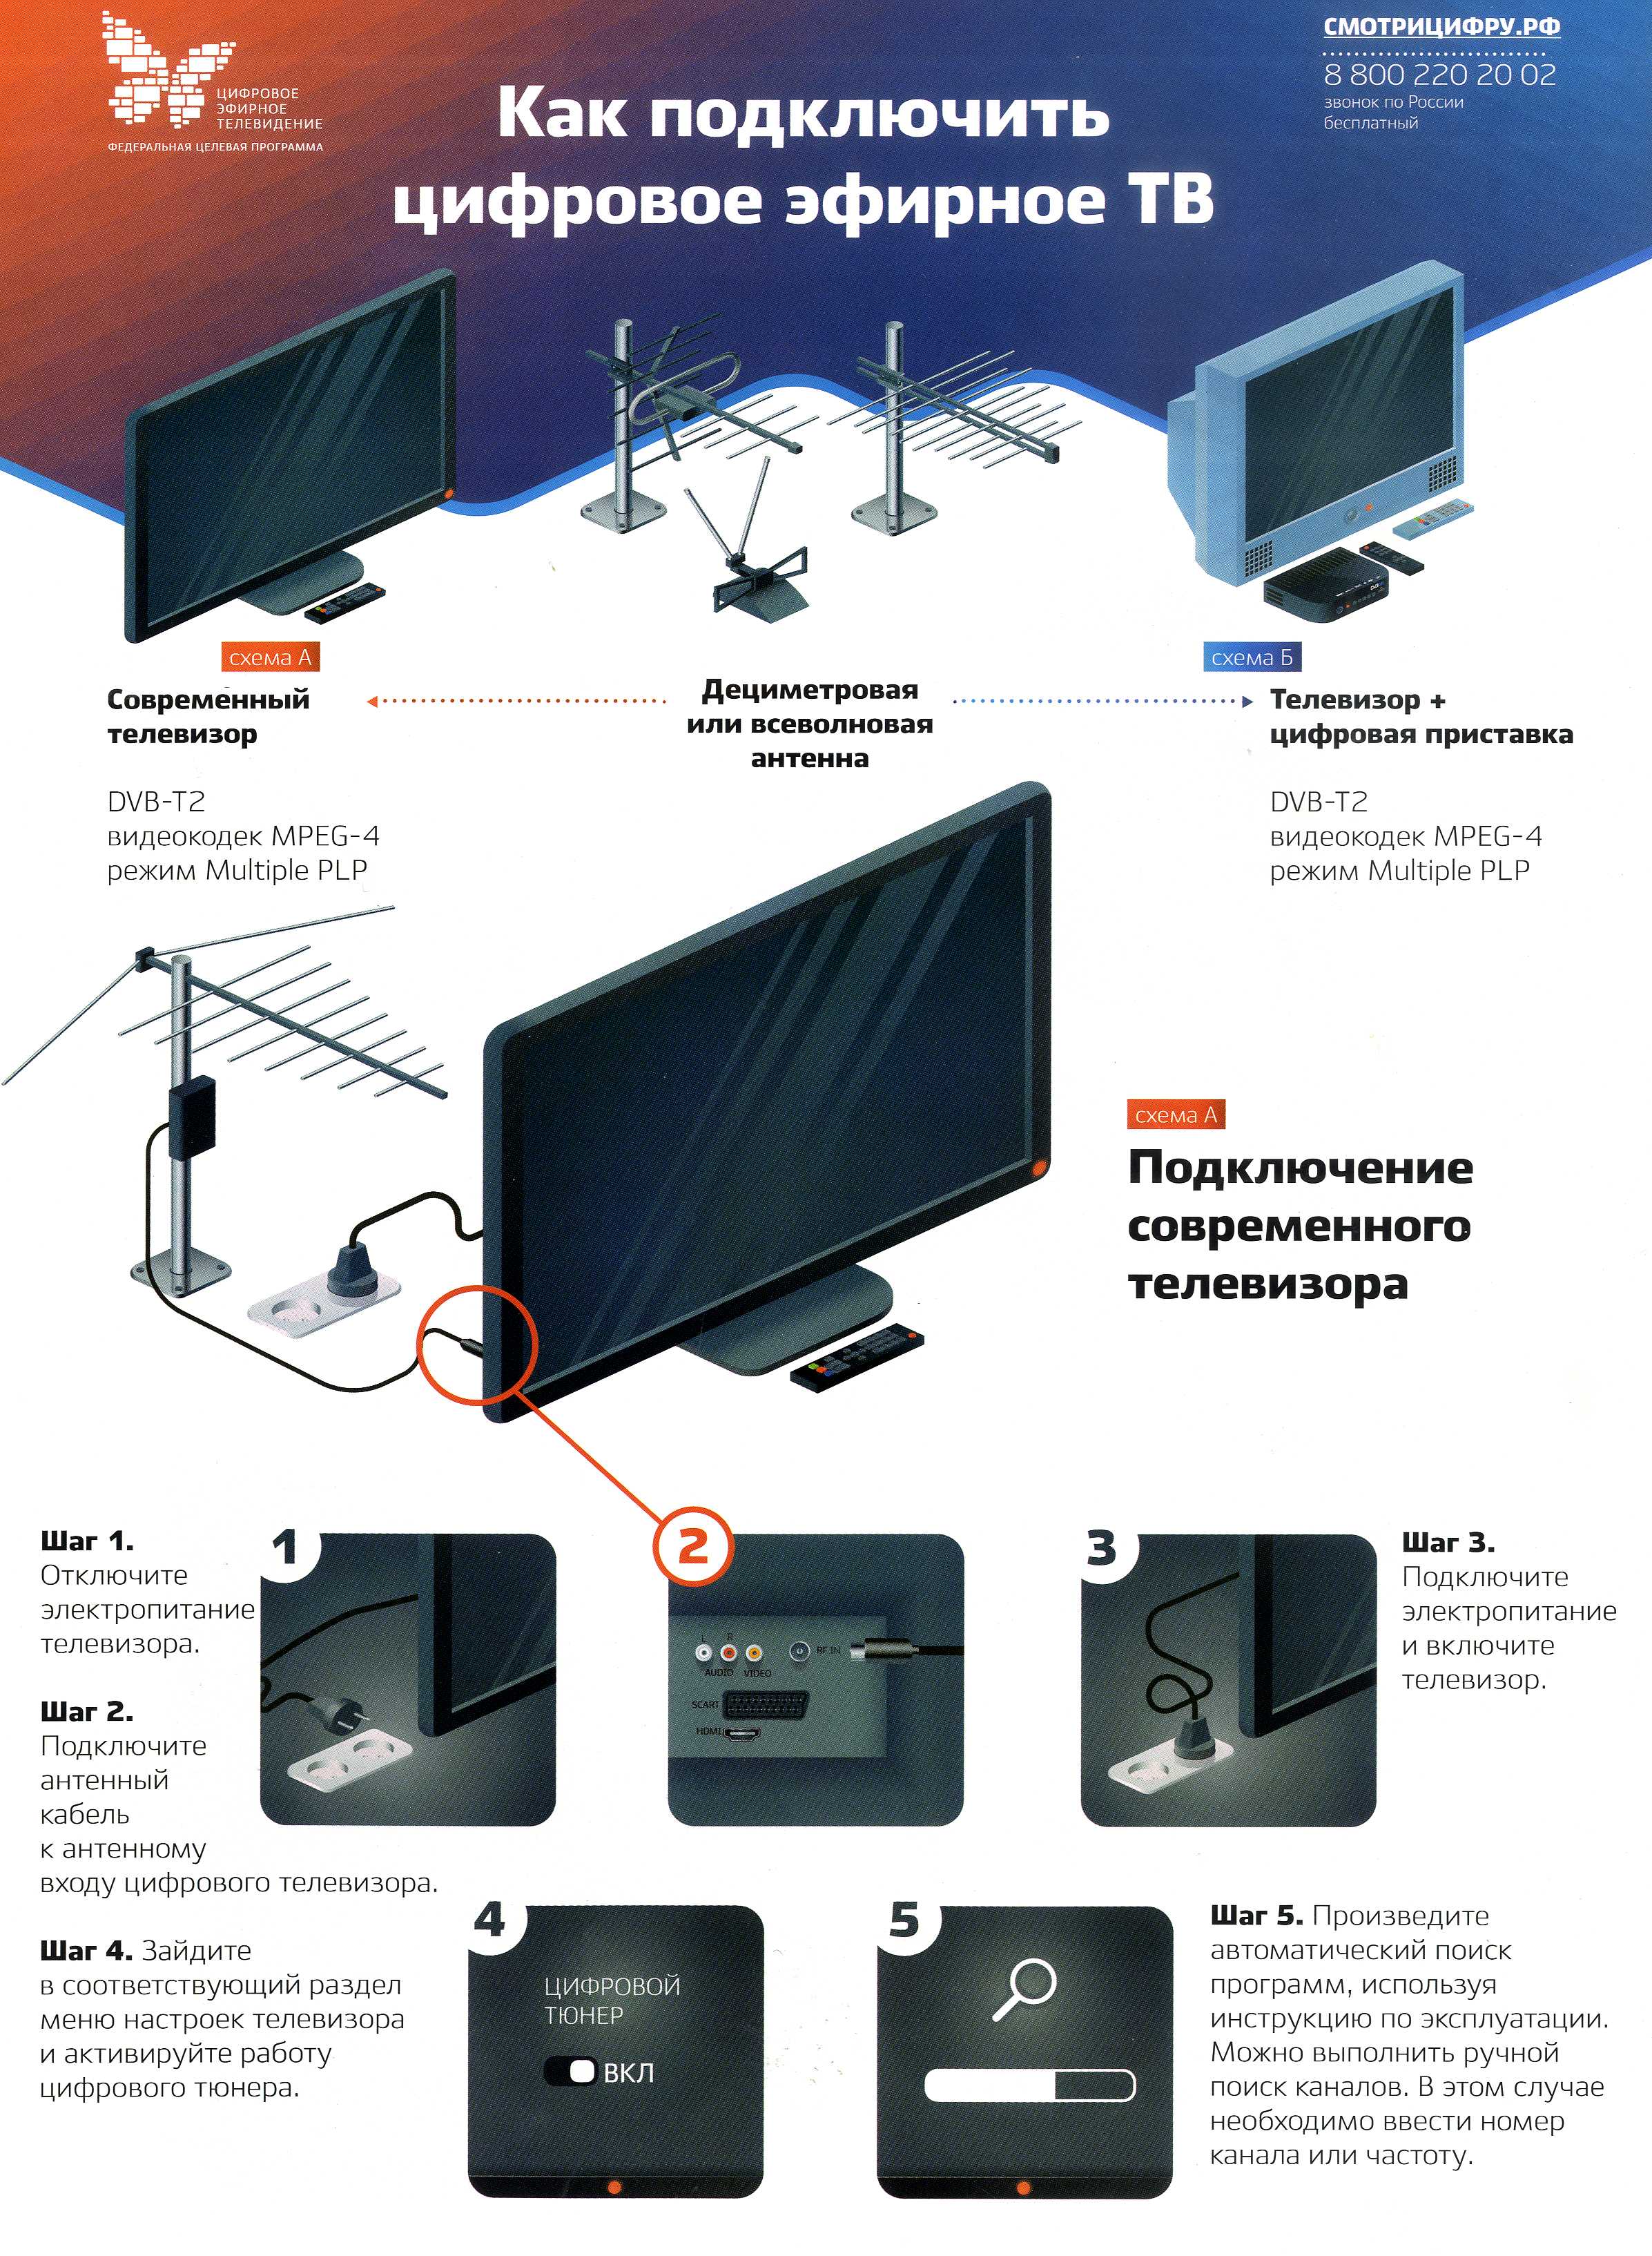 Как подключить приставку цифрового телевидения к старому телевизору и настроить каналы